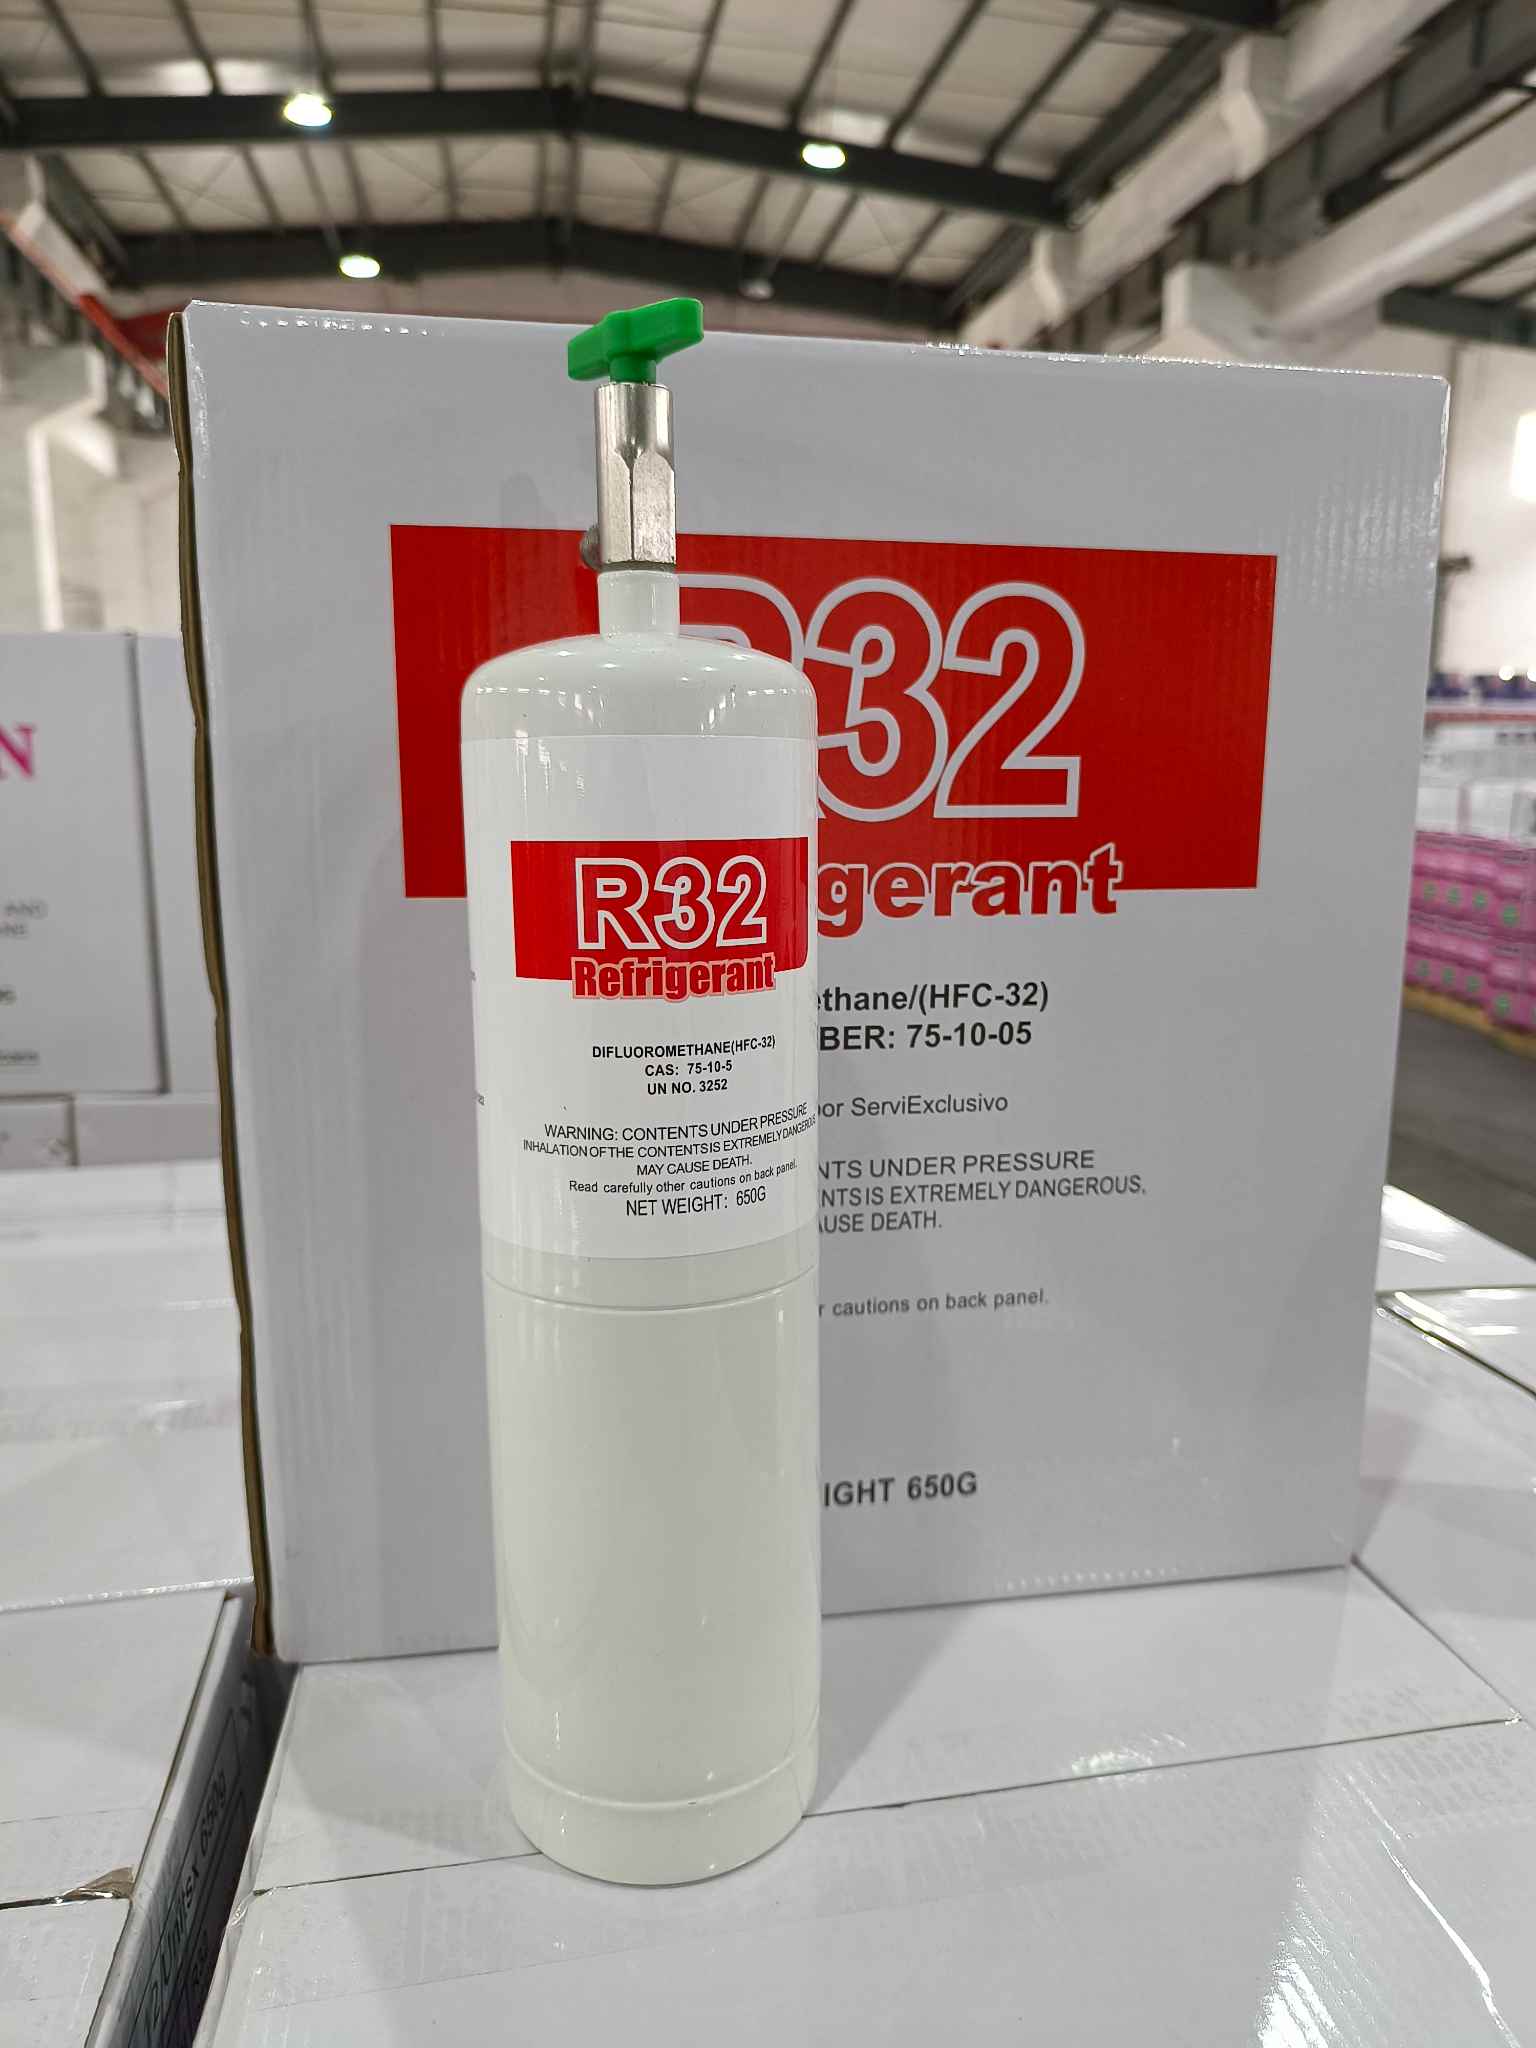 Frioflor produce R32 en el paquete de botes de 650 g en China